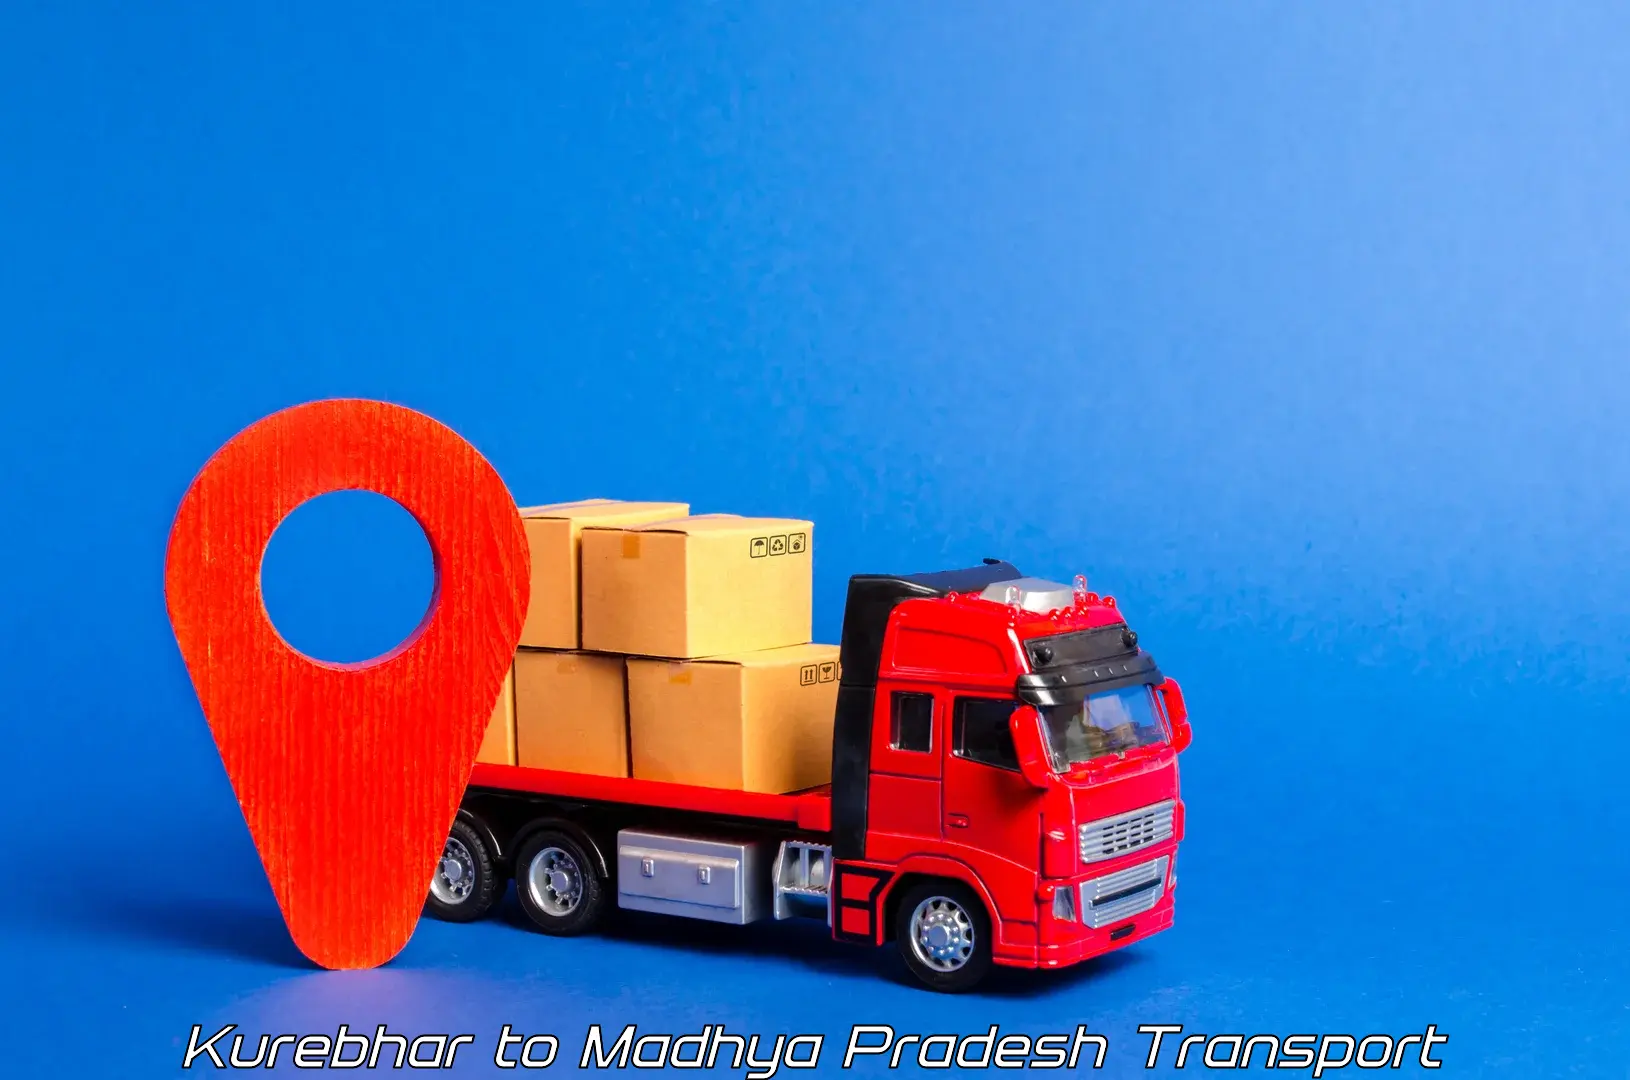 Road transport online services Kurebhar to Kotma